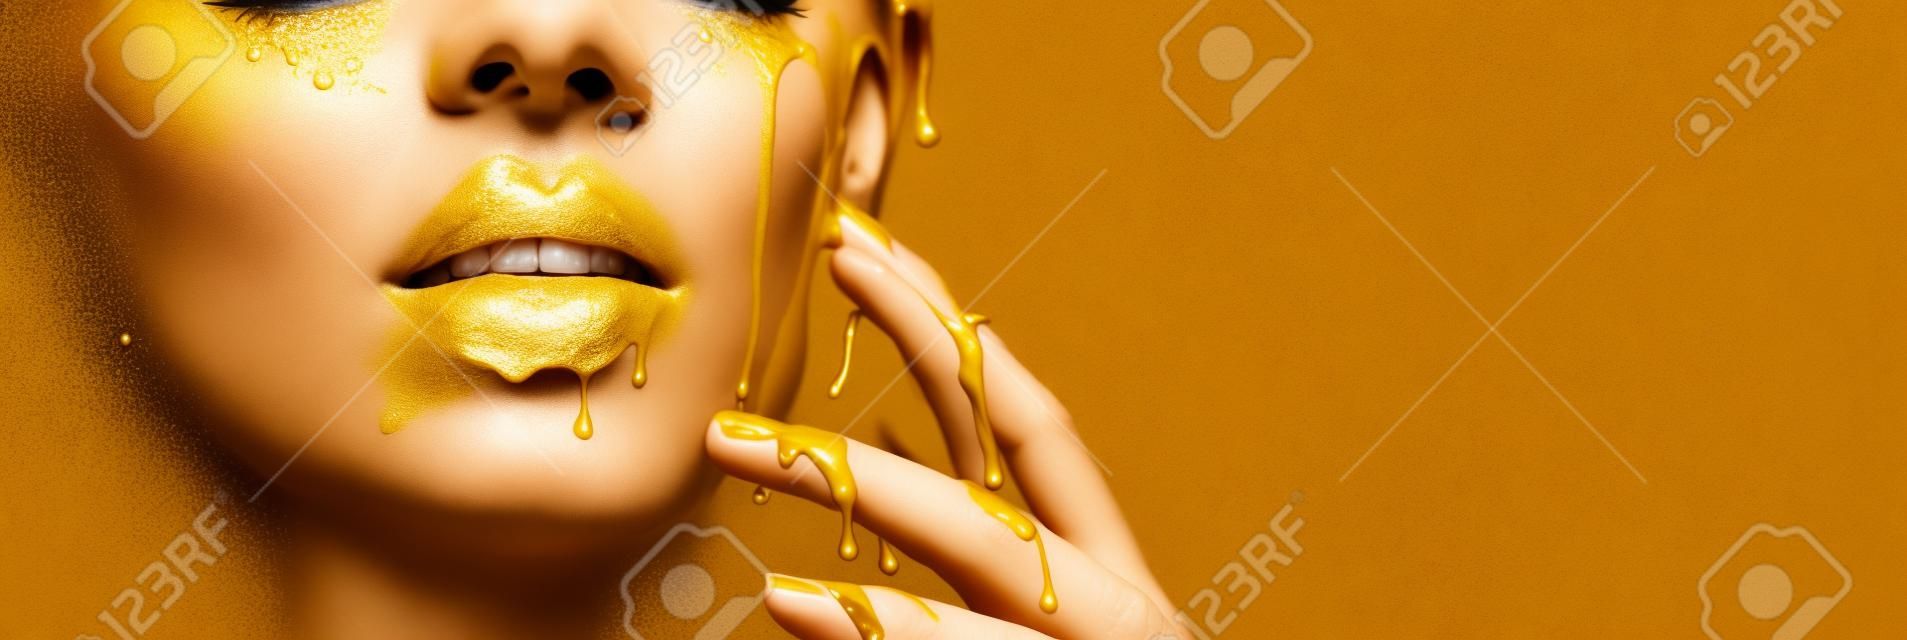 Manchas de tinta dourada goteja dos lábios do rosto e da mão, gotas líquidas douradas na boca da menina modelo bonita, maquiagem abstrata criativa.